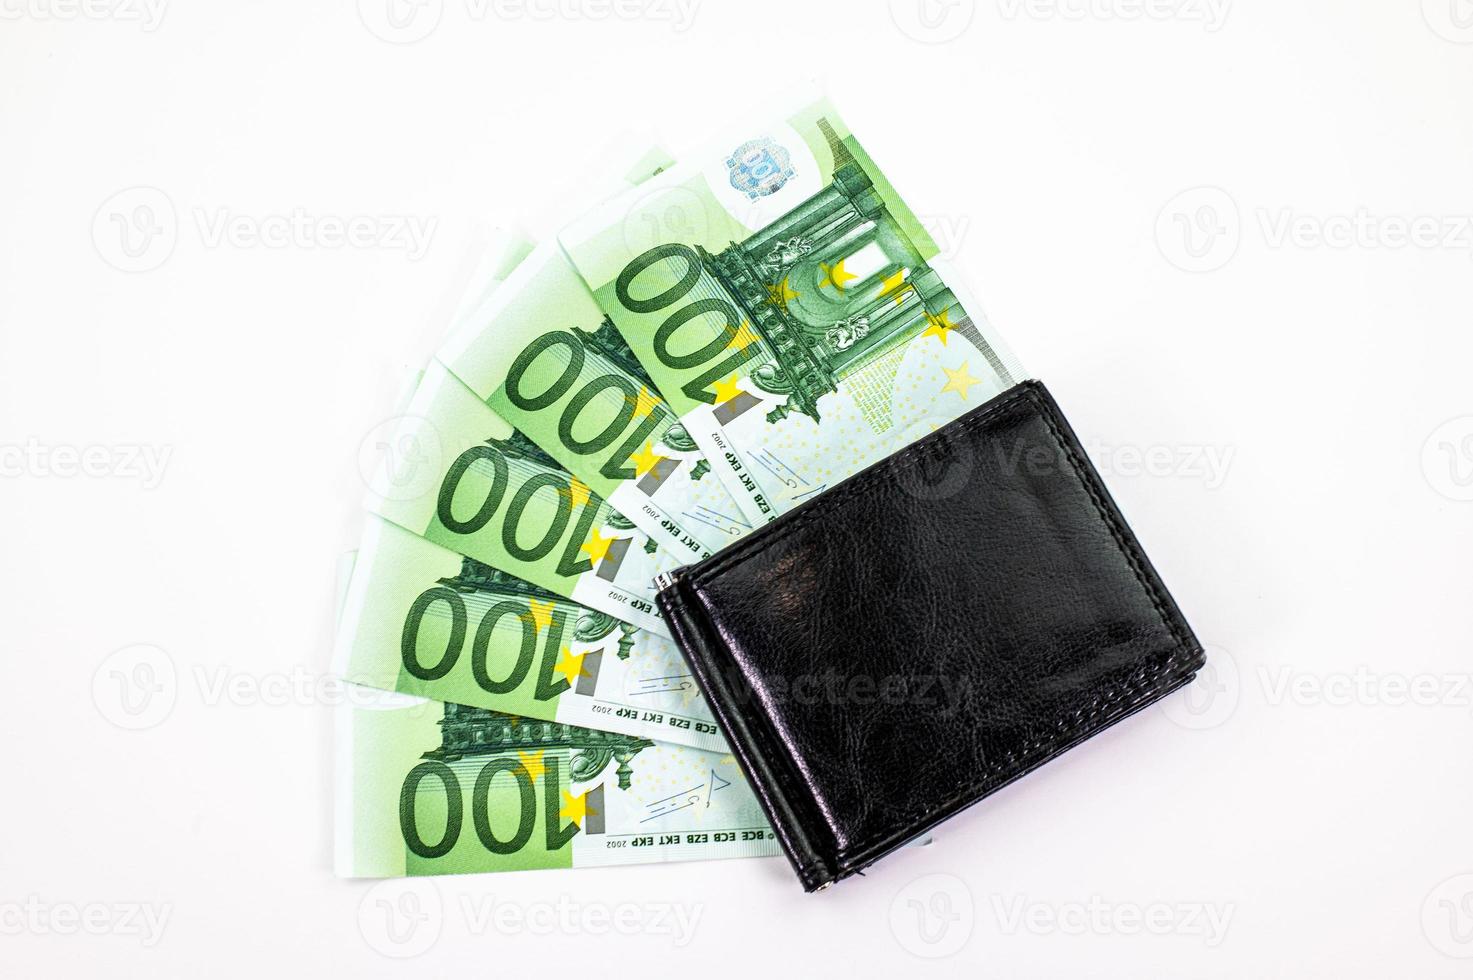 waaiervormige bankbiljetten van 100 euro foto